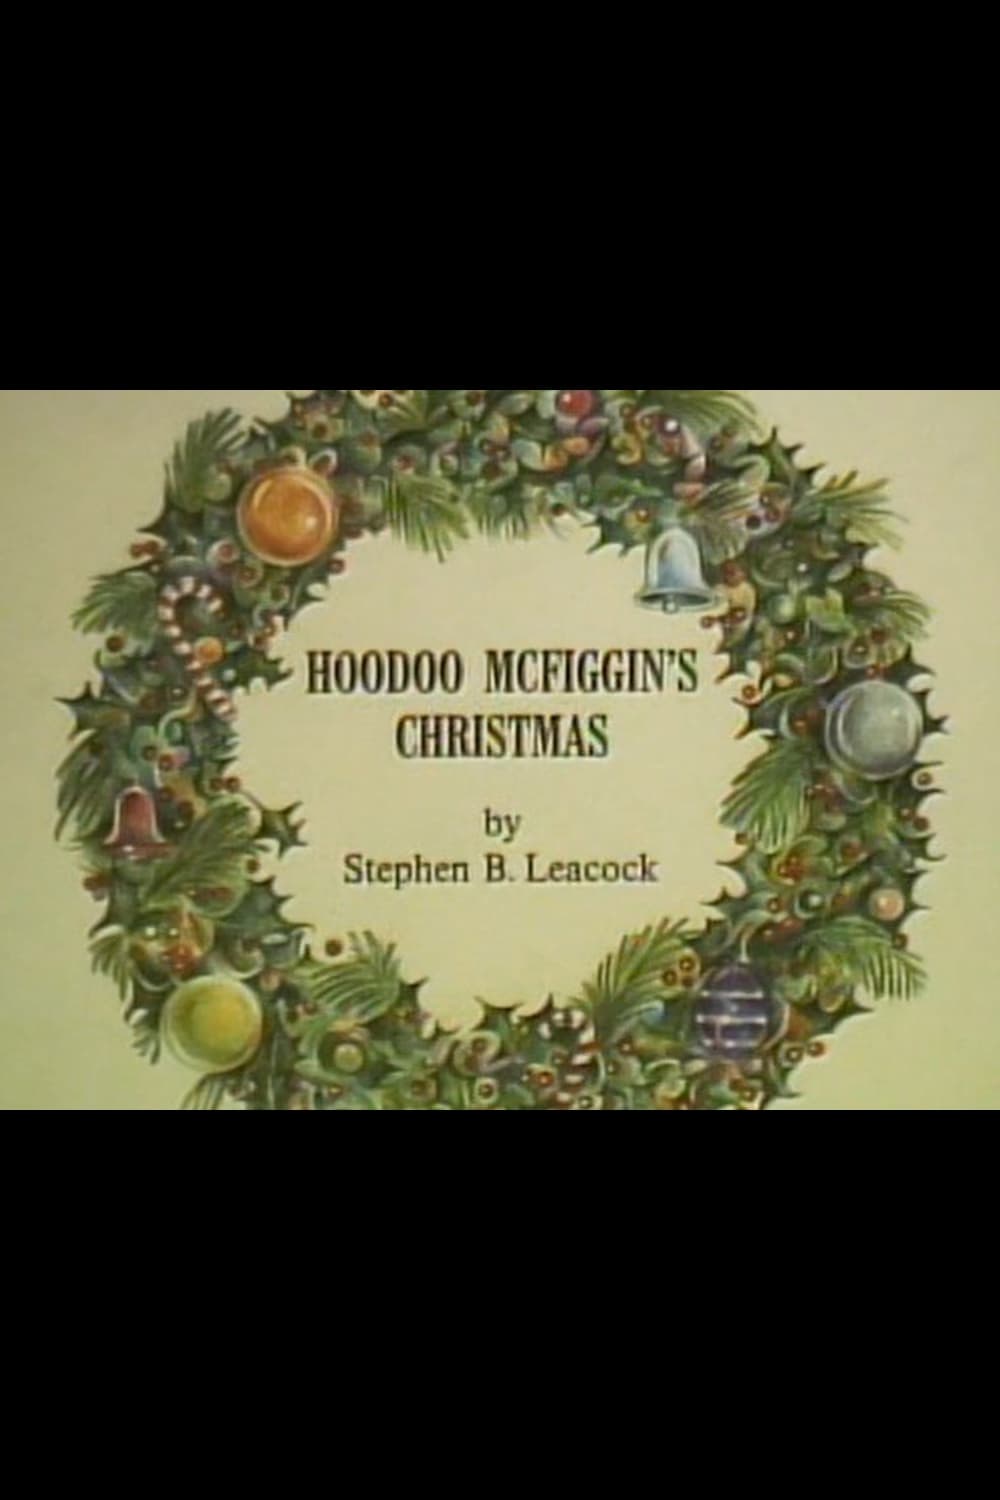 Hoodoo McFiggin's Christmas